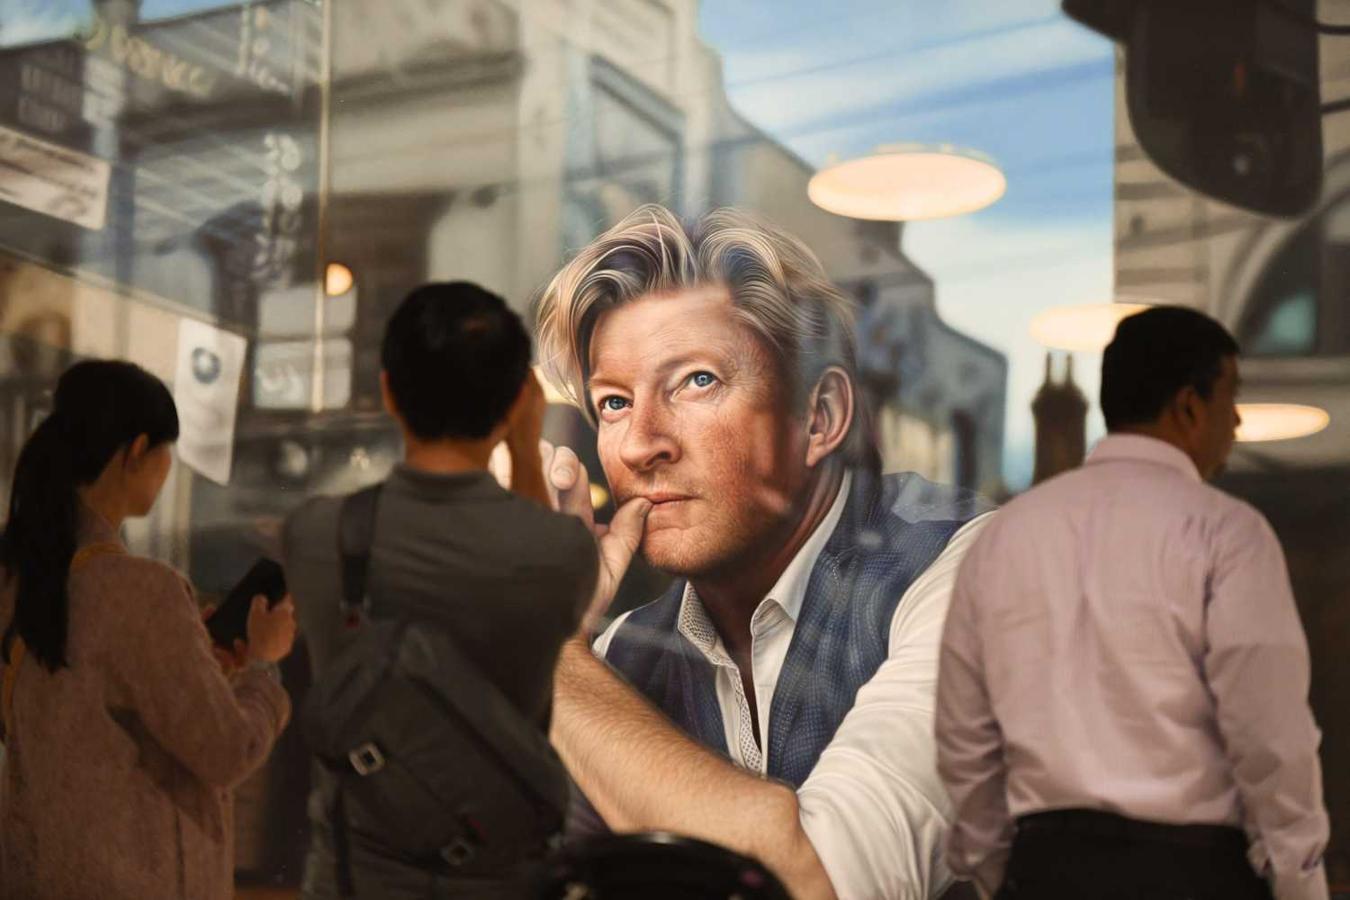 Varias personas observan el retrato hiperrealista del actor David Wenham titulado "A través del espejo", obra de la artista australiana Tessa MacKay, que se alzó con el premio Packing Room, en la Galería de Arte de Nueva Gales del Sur, en Sídney, Australia